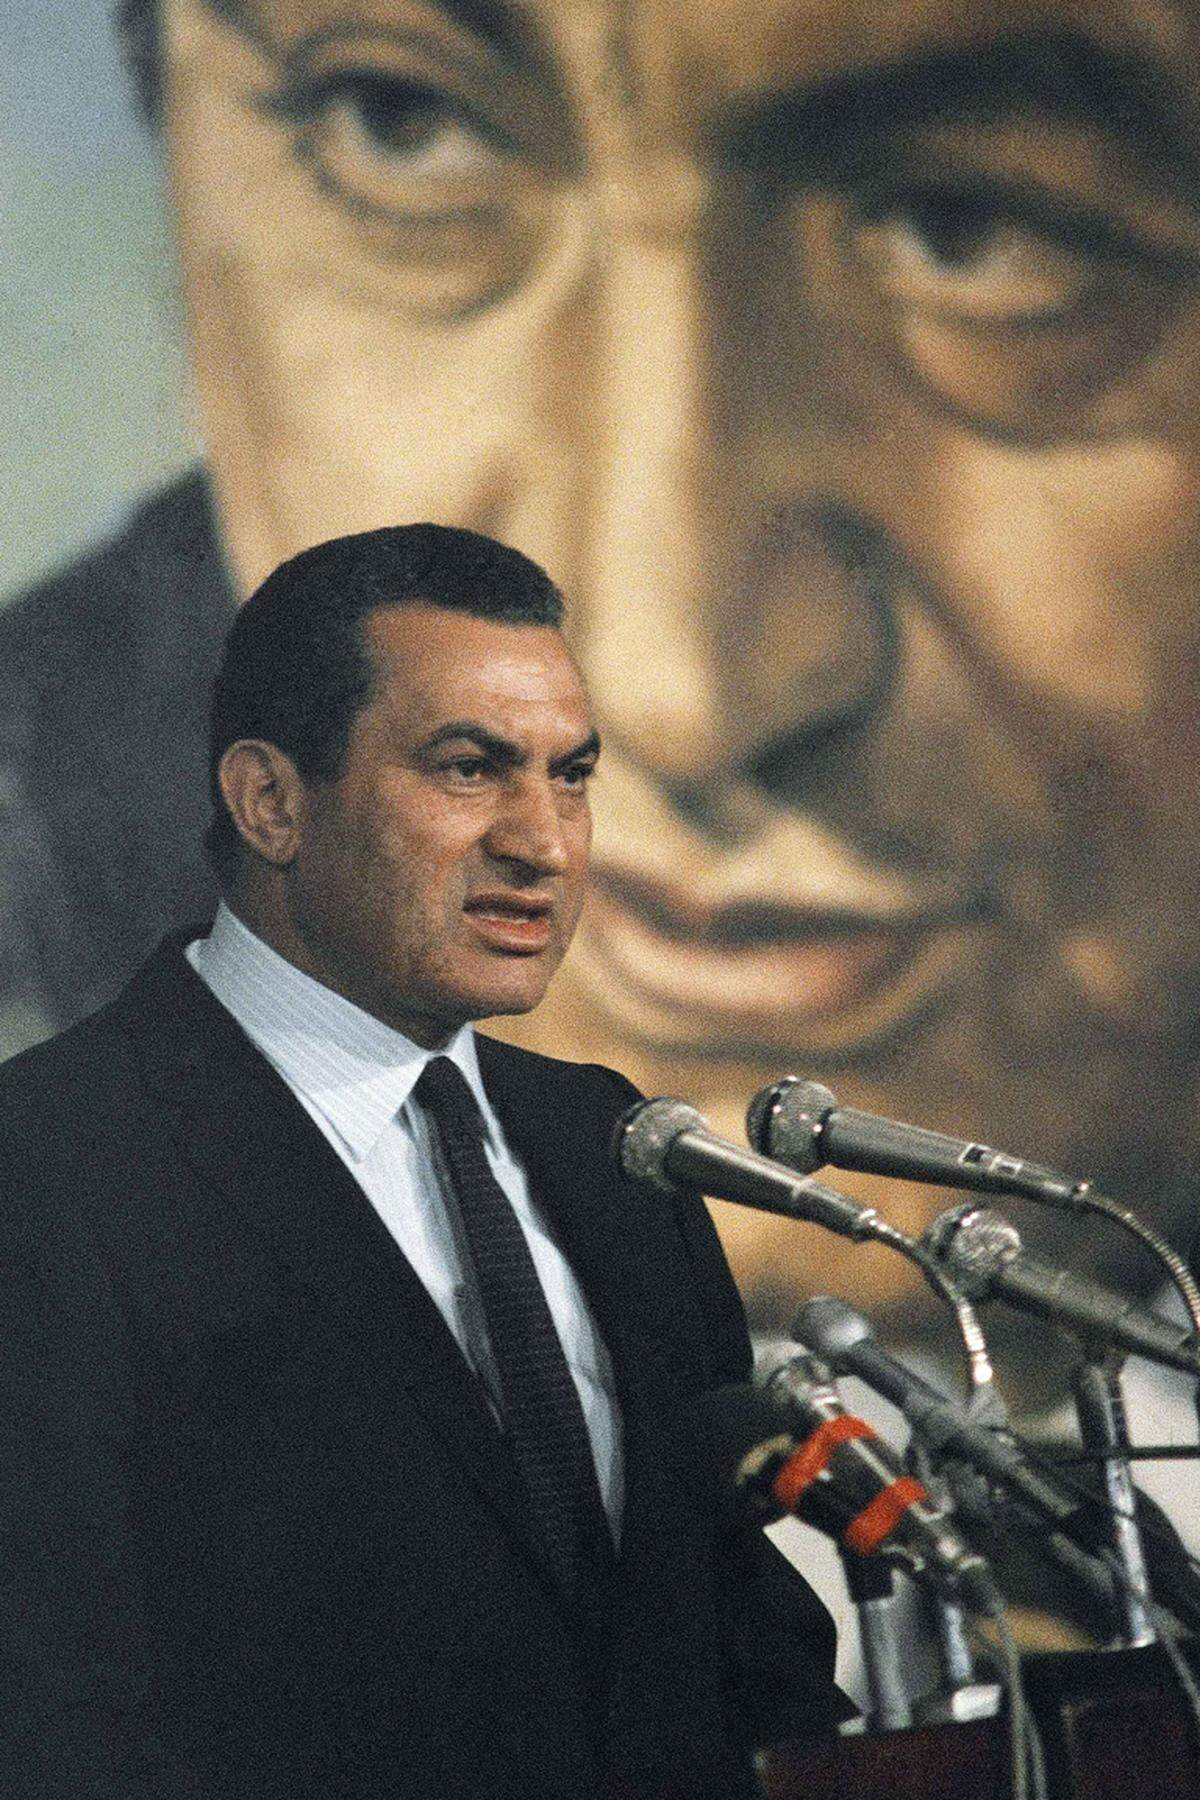 Auf den wachsenden Druck, demokratische Reformen zuzulassen, reagierte Mubarak zunächst mit einer Verfassungsänderung. Im September 2005 fand erstmals eine Präsidentenwahl mit mehreren Kandidaten statt. Seinen schärfsten Gegner musste der Amtsinhaber dabei nicht fürchten: Die Islamisten waren nicht zur Wahl zugelassen.